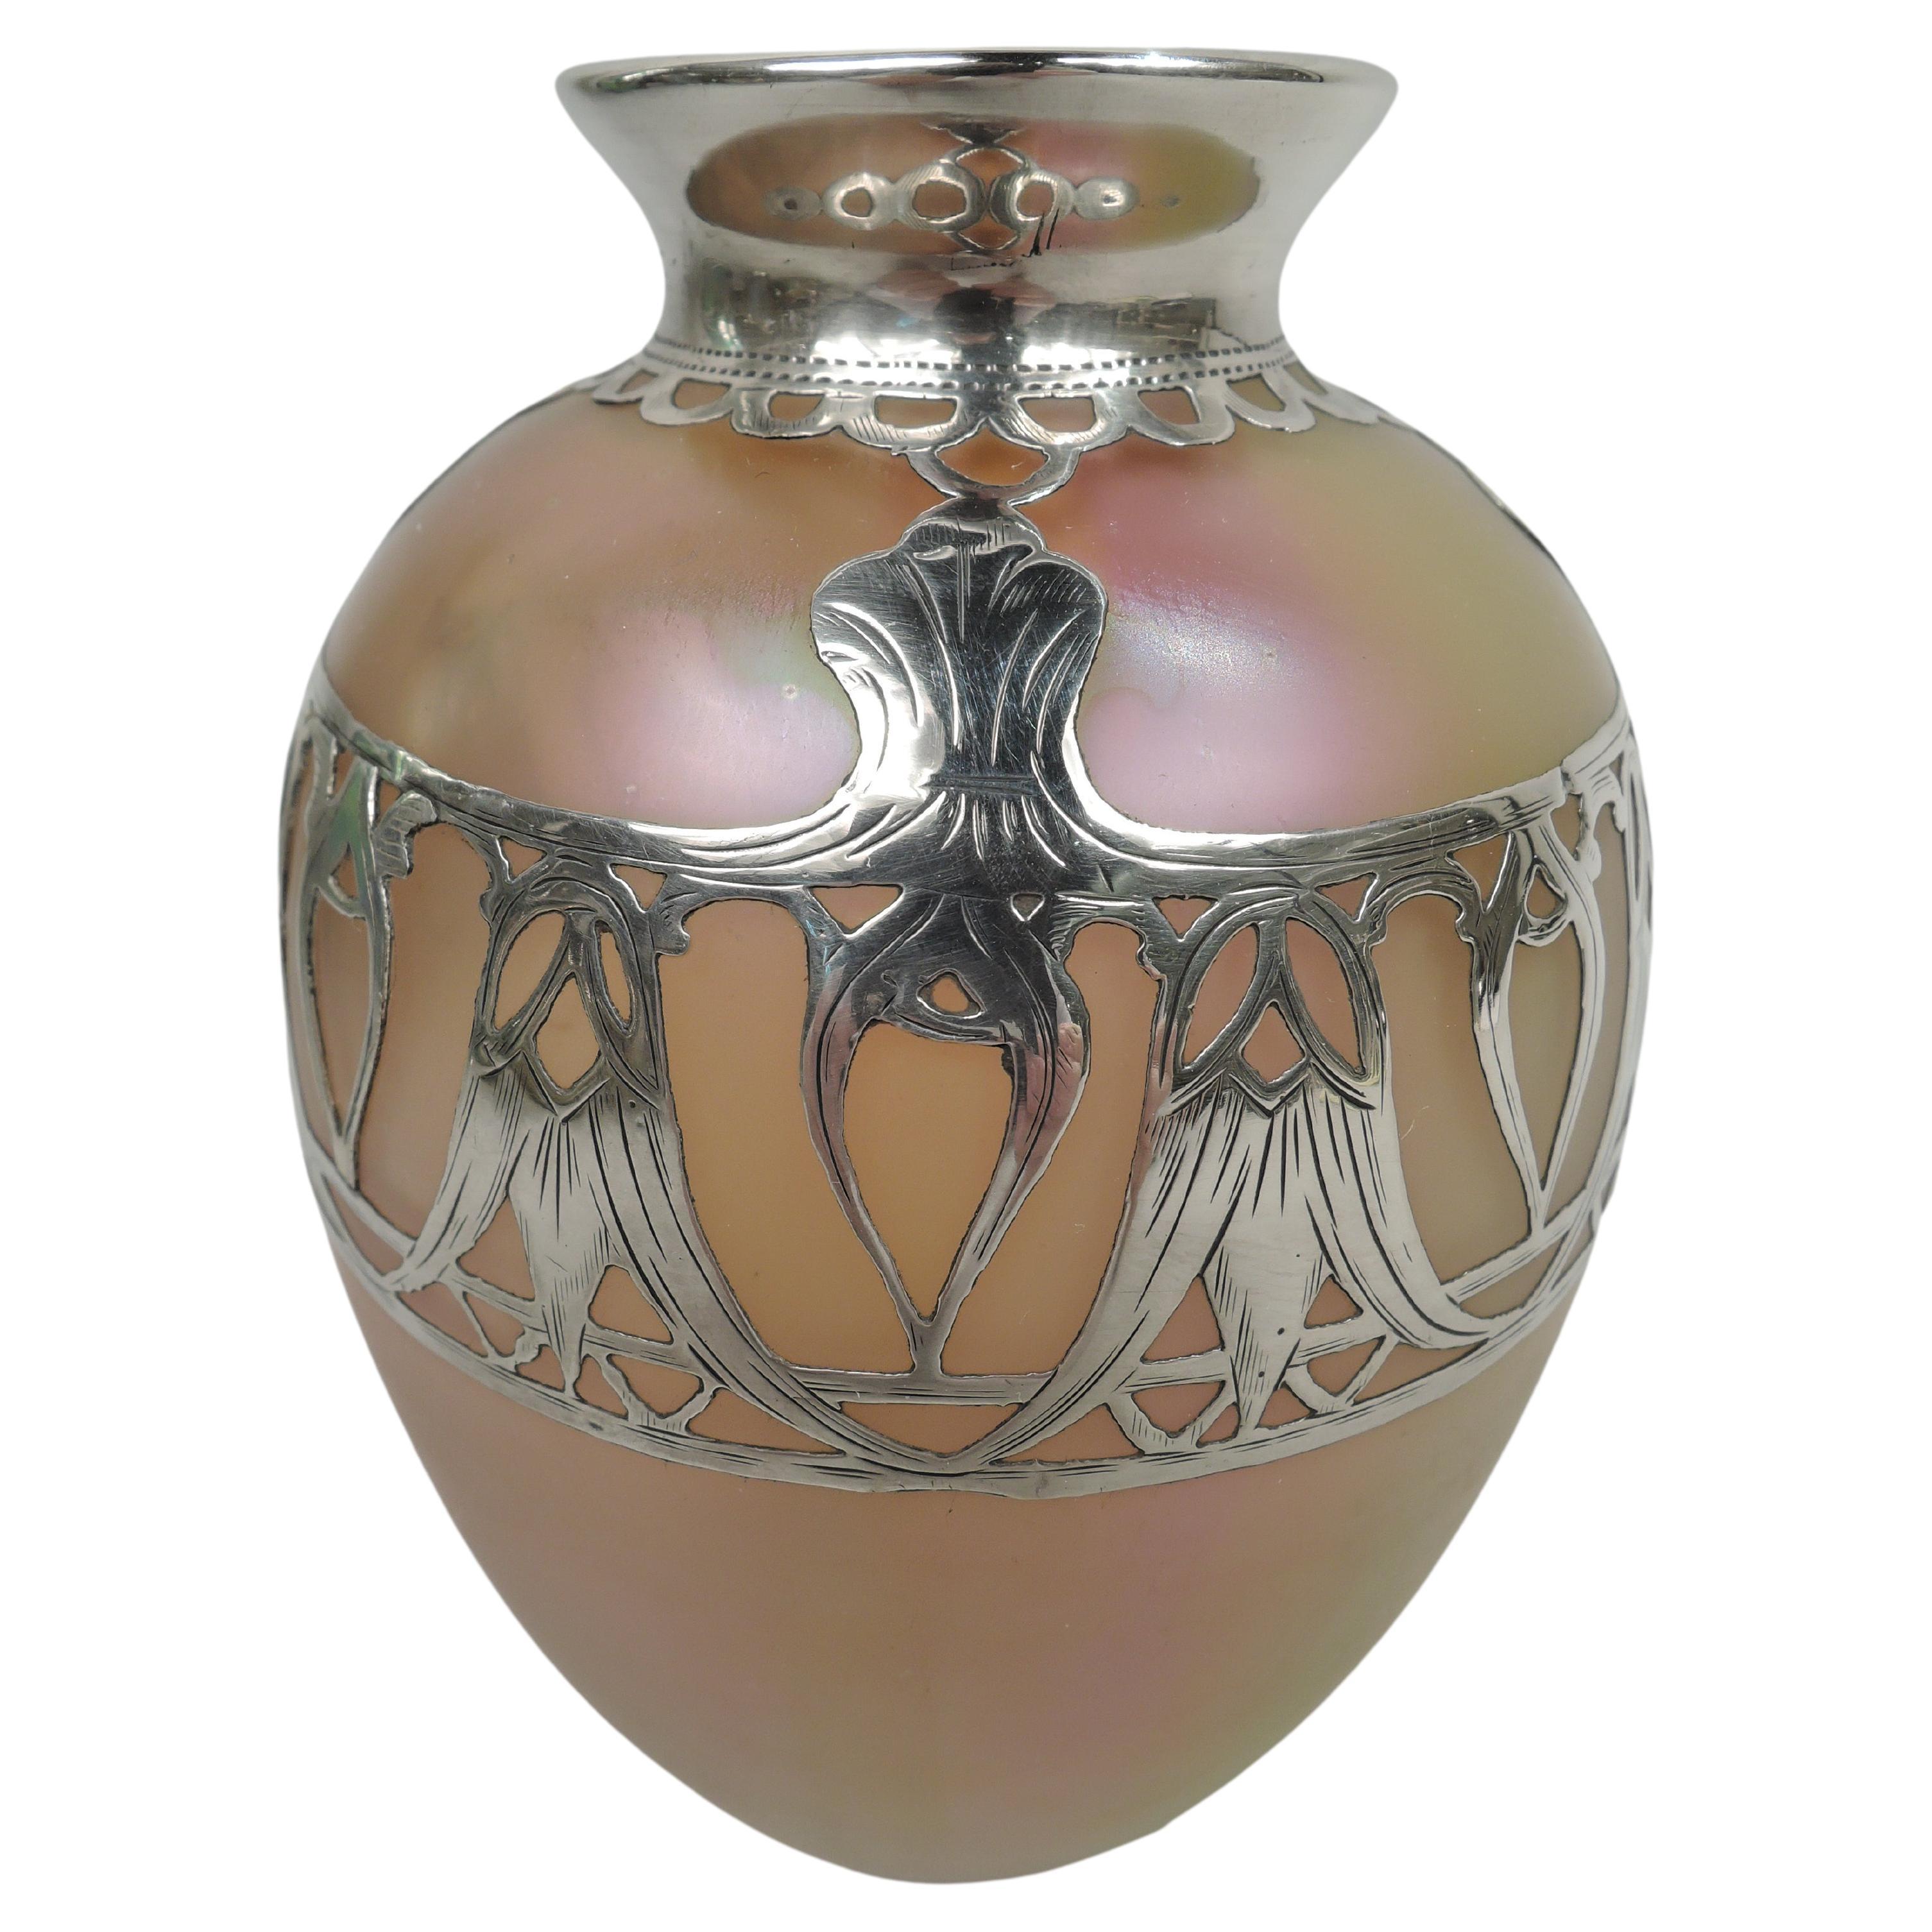 Loetz Silberiris Art Nouveau Iridescent Silver Overlay Vase